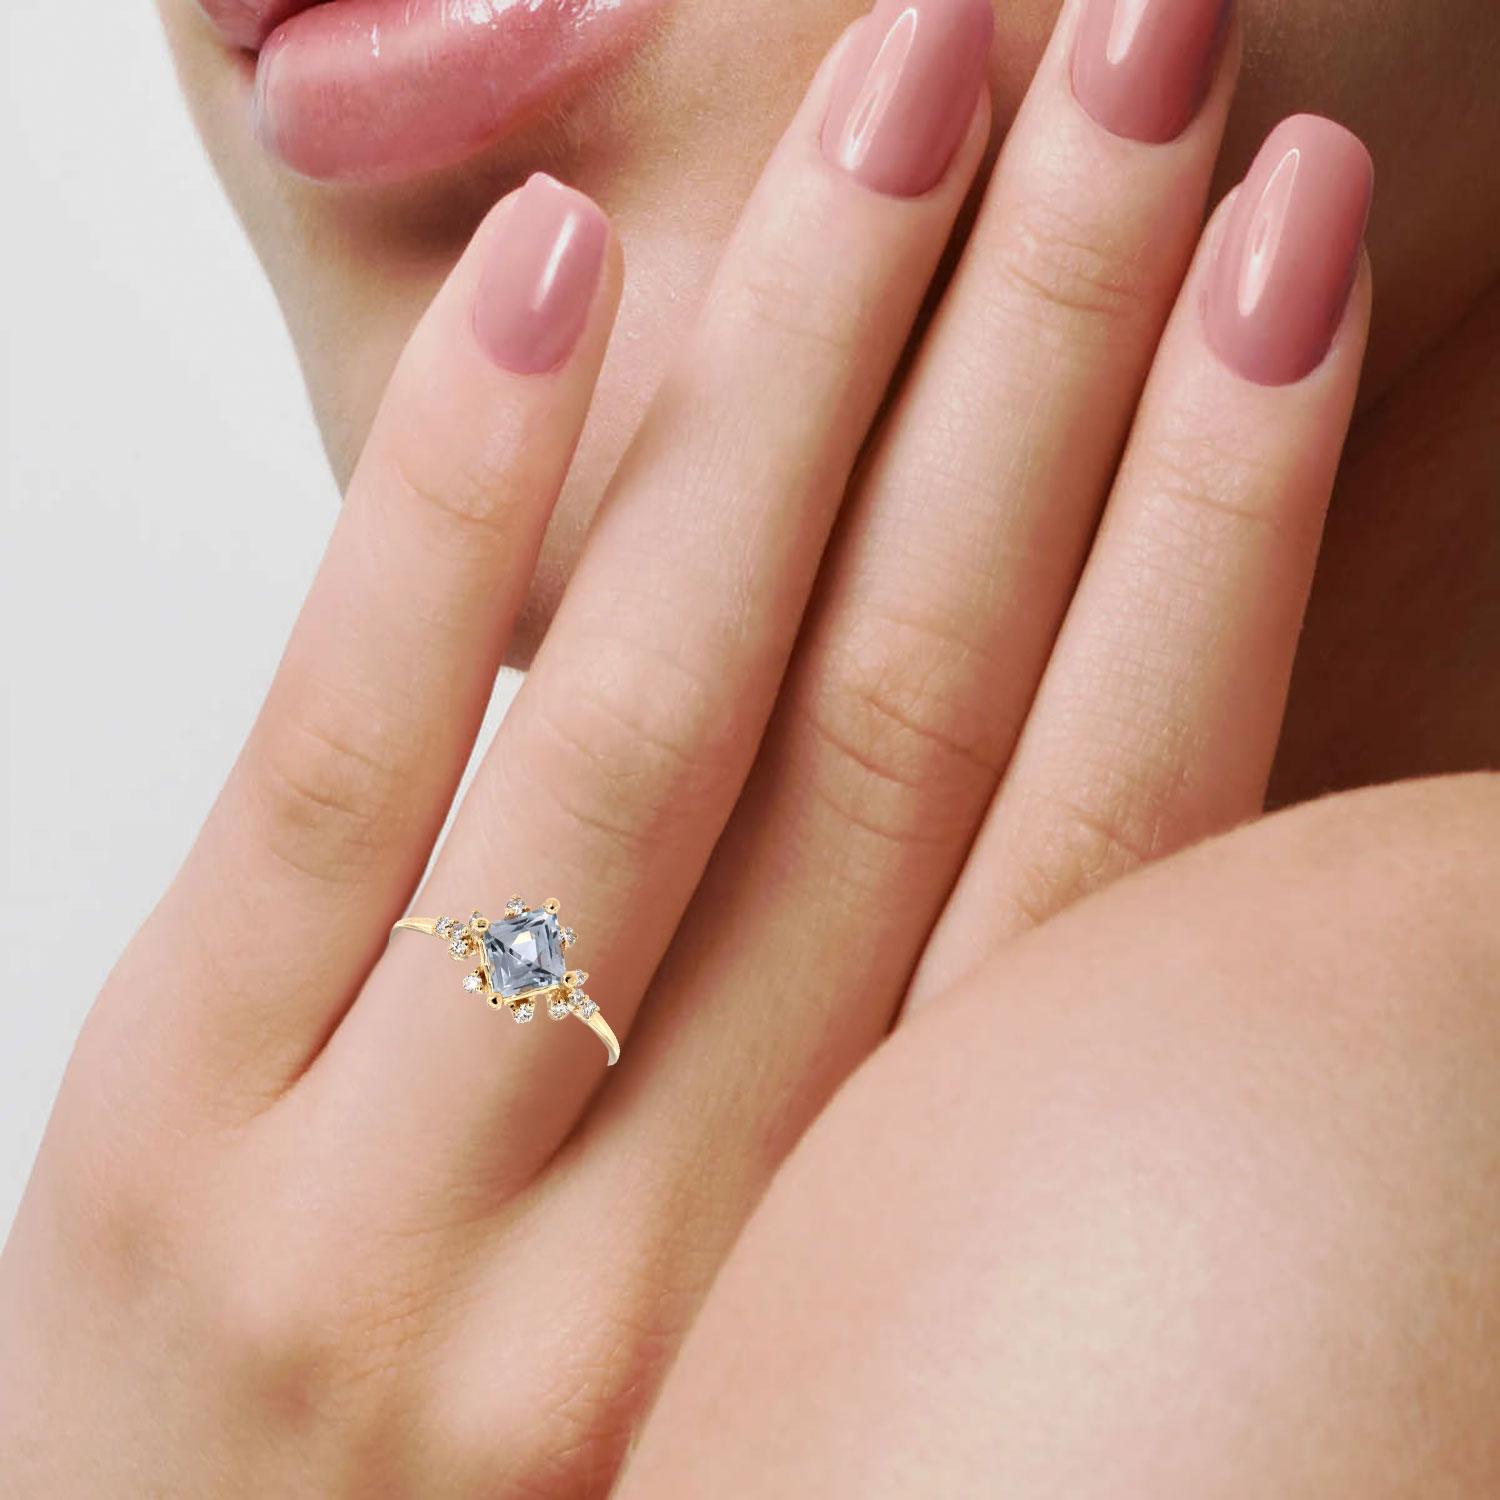 4-5 carat diamond rings